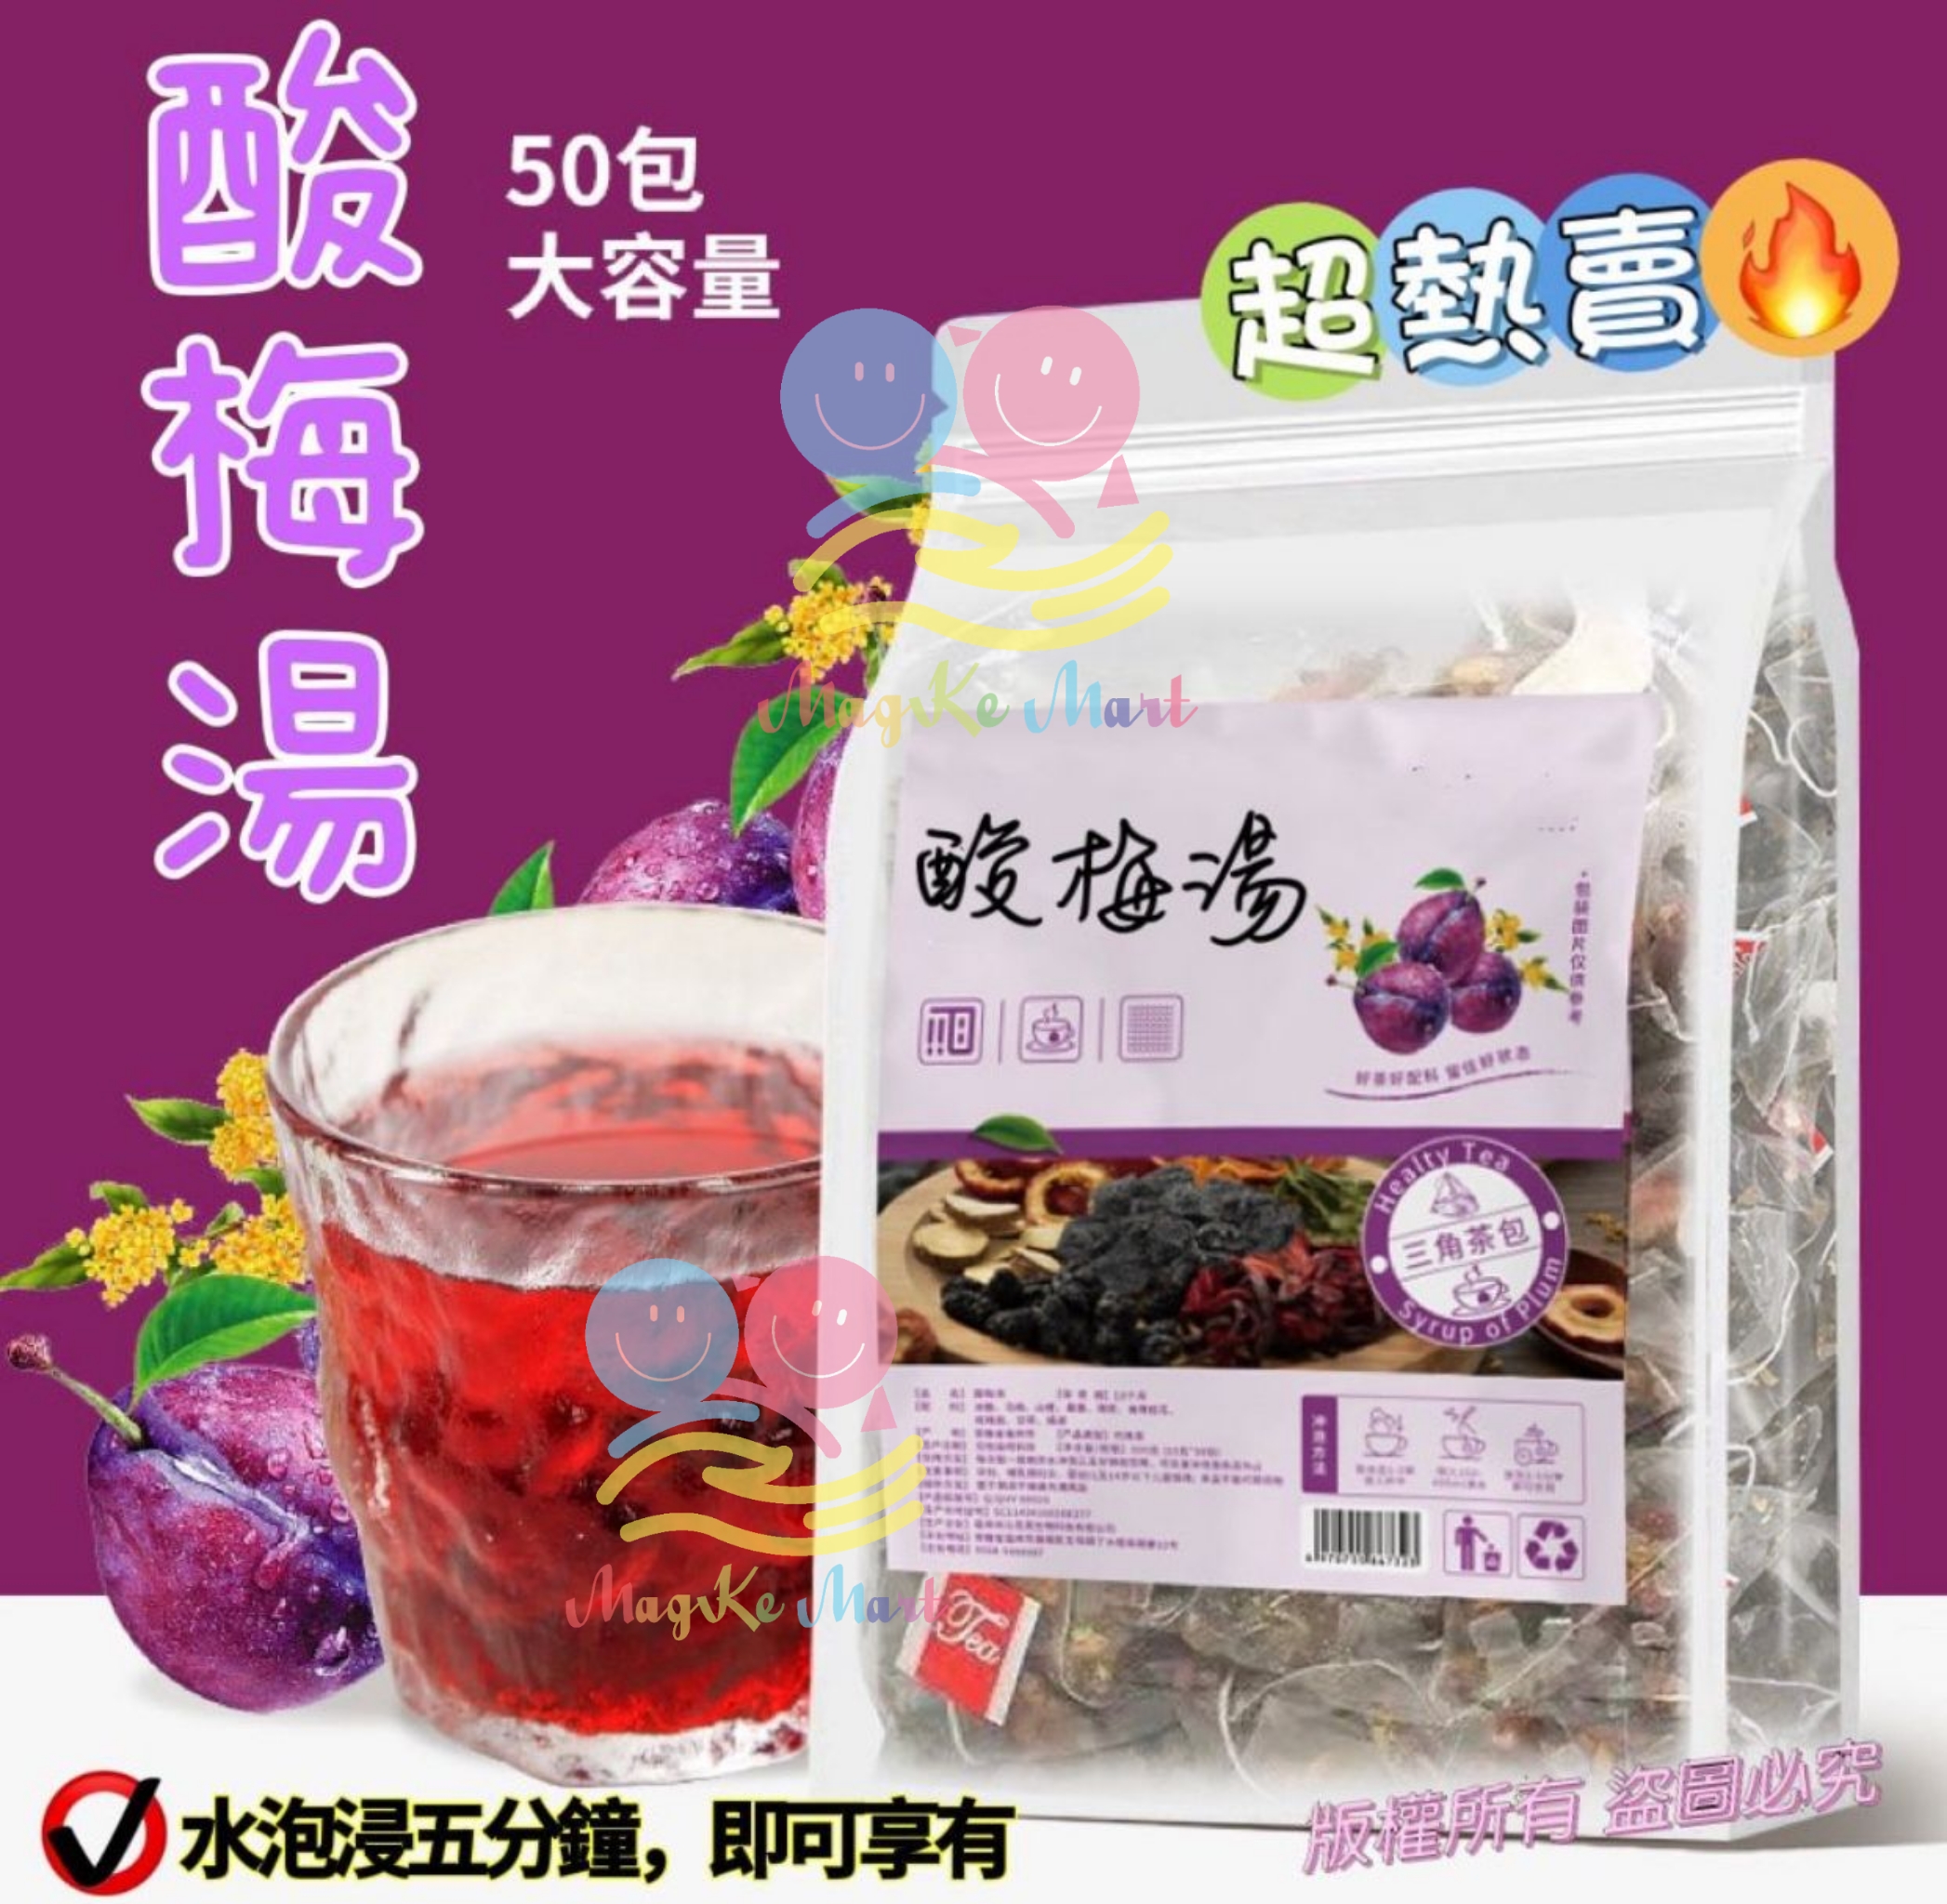 酸梅湯茶包 500g (1袋50小包)